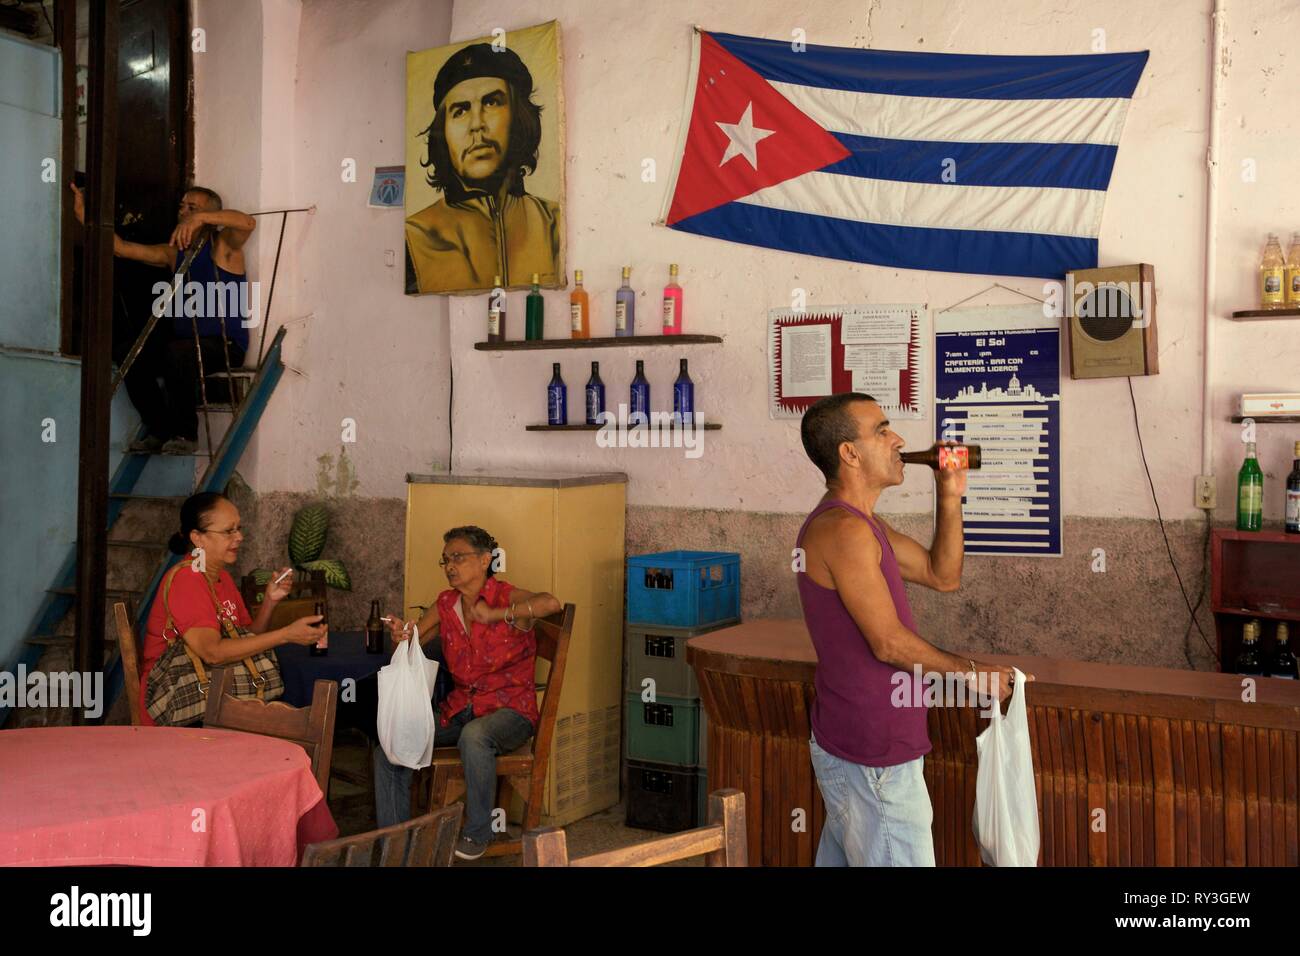 Cuba, La Habana, Havana vecchia, classificato come patrimonio mondiale dall UNESCO, uomo di bere una birra e donne anziane seduto in una barra di stato decorato con una bandiera cubana e un ritratto di Che Guevara Foto Stock